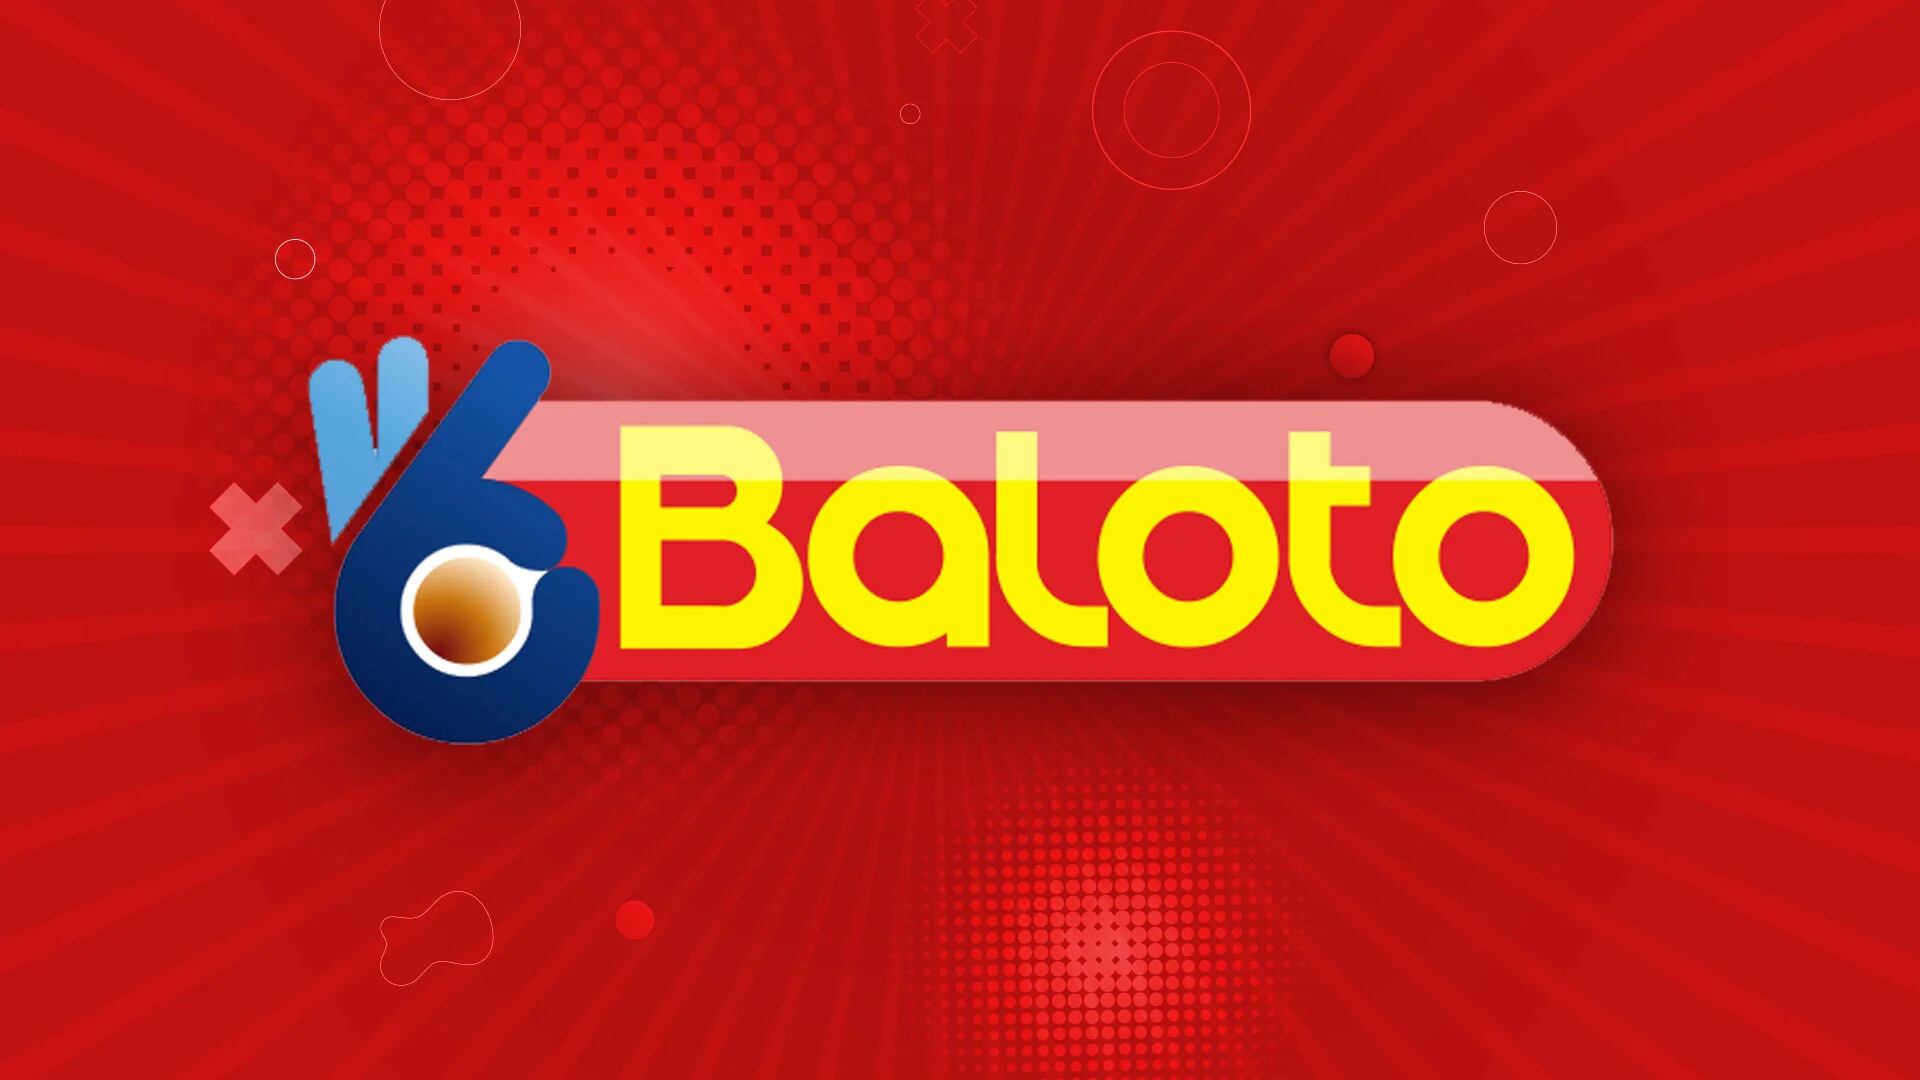 Resultados del Baloto: ganadores y números premiados del sábado 30 de septiembre